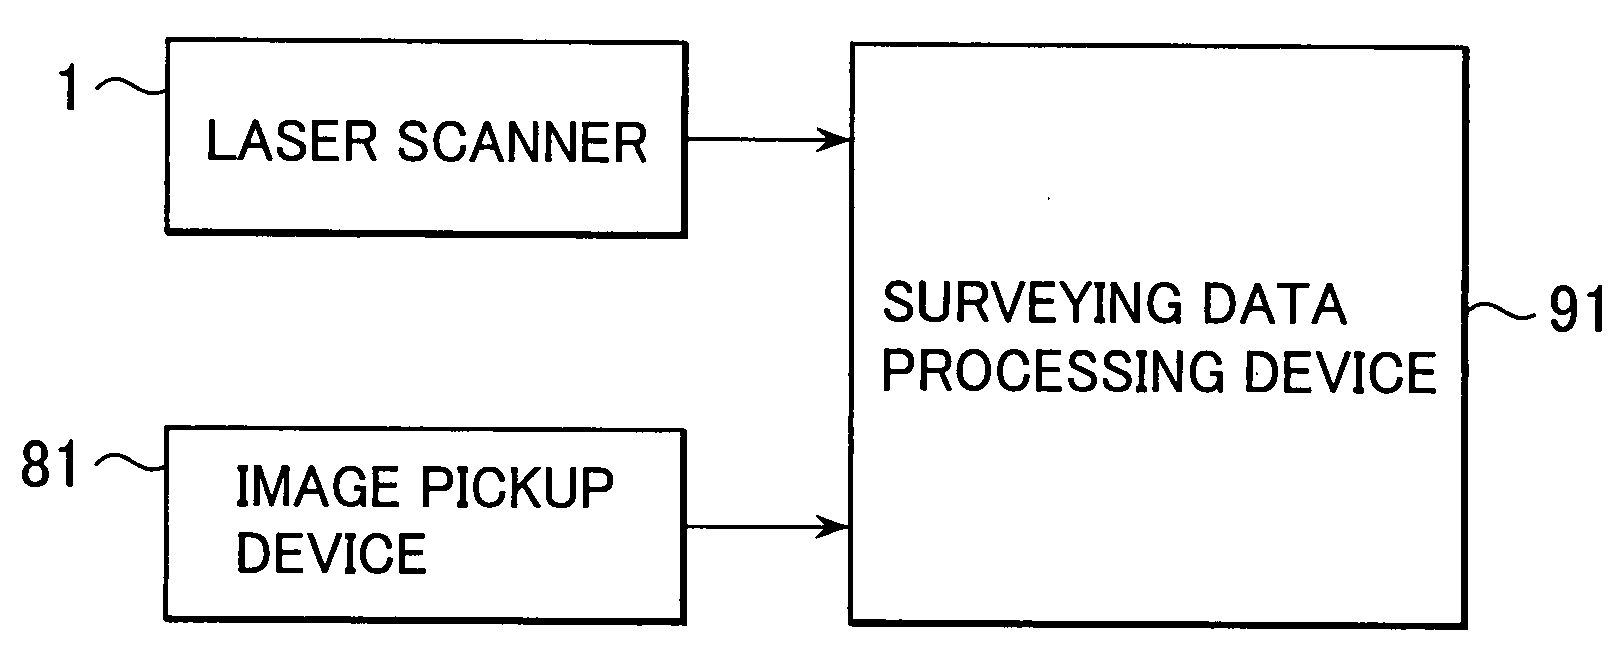 Surveying method, surveying system and surveying data processing program